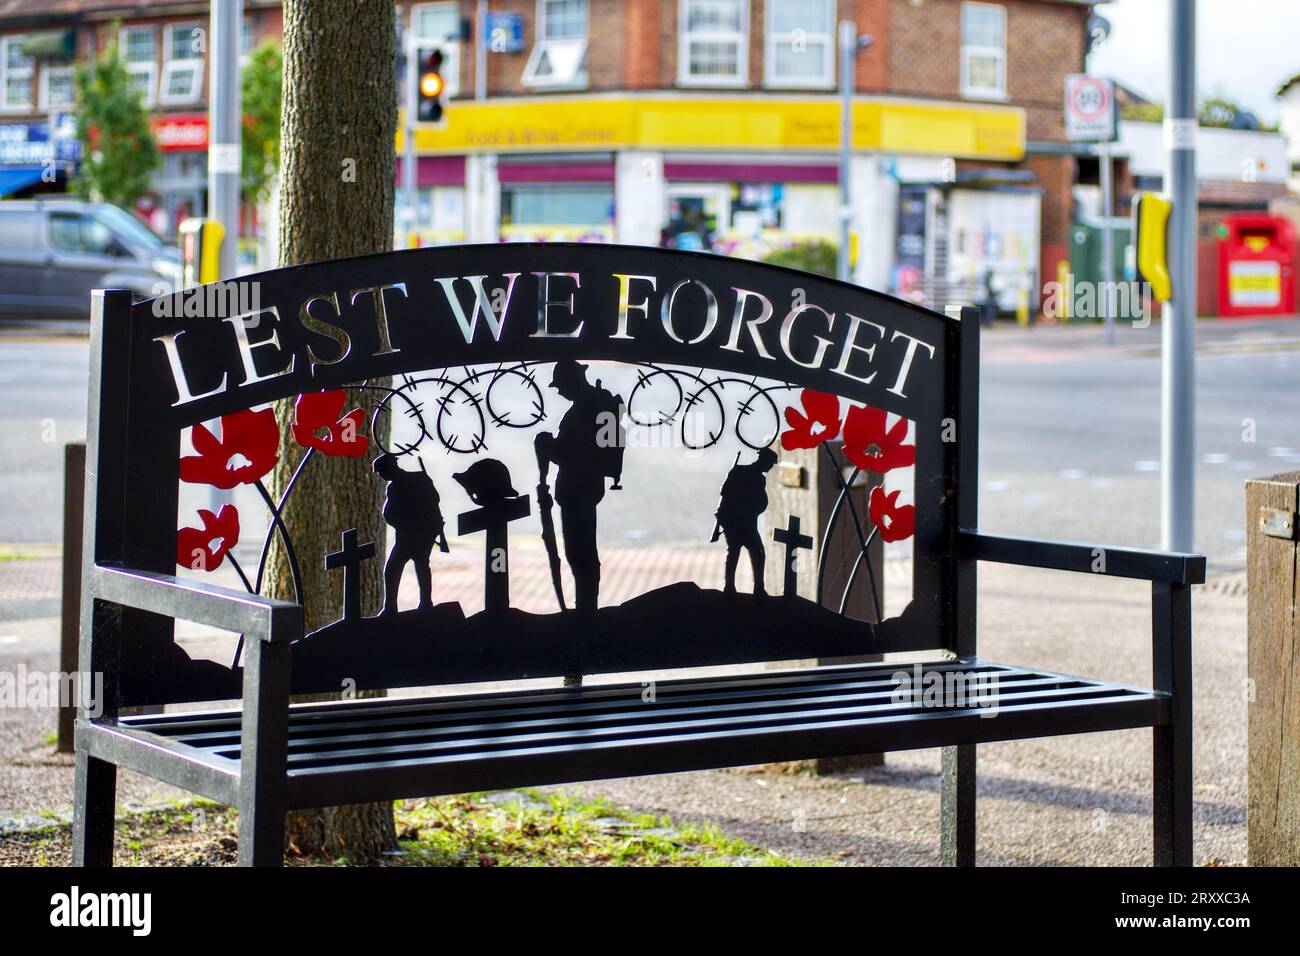 Lest We Forget public seat outside Parade of shops, Bushey Mill Lane, Watford, Hertfordshire, England, UK Stock Photo